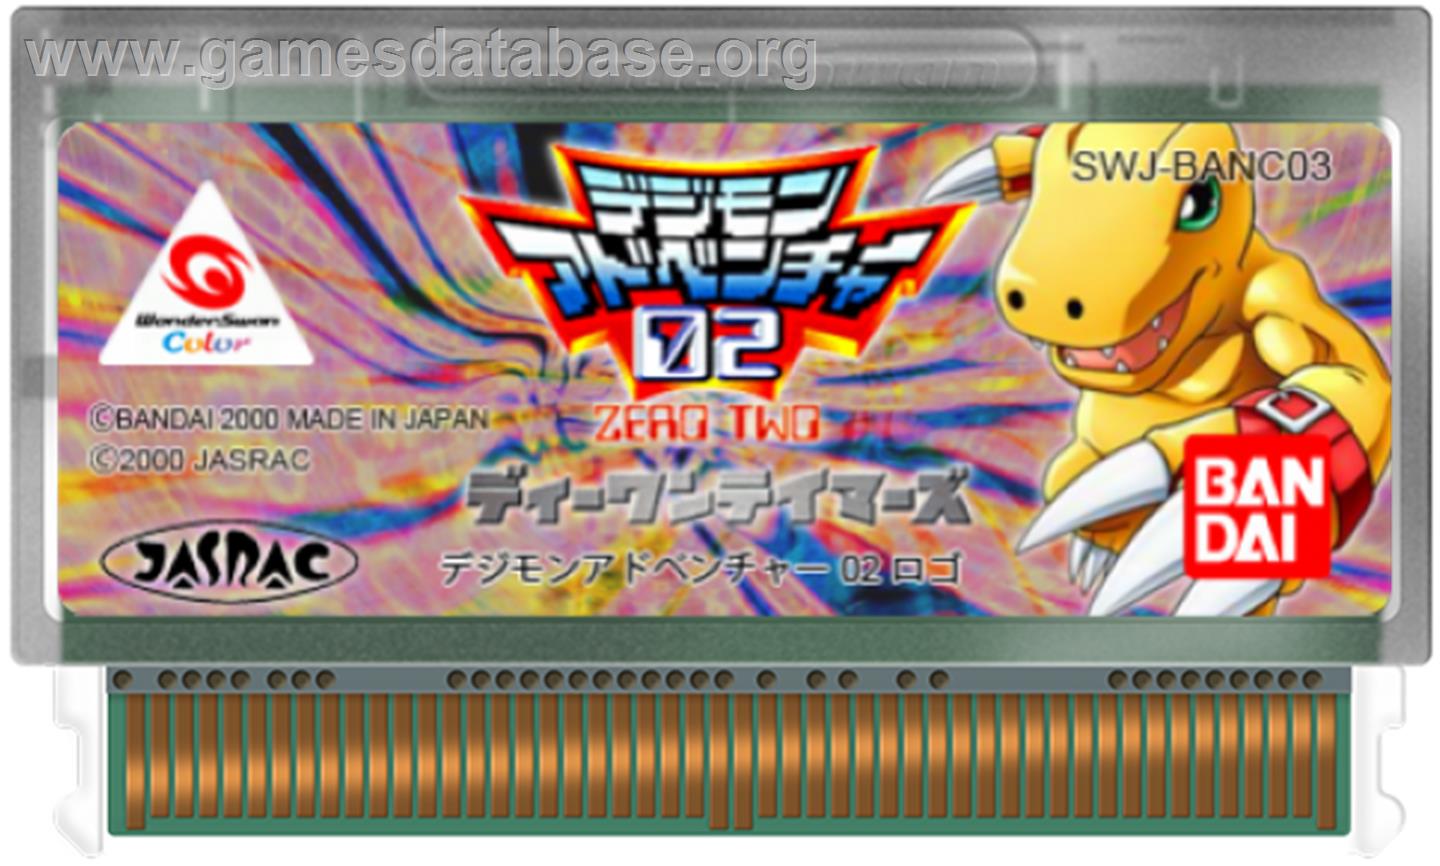 Digimon Adventure 02: D1 Tamers - Bandai WonderSwan Color - Artwork - Cartridge